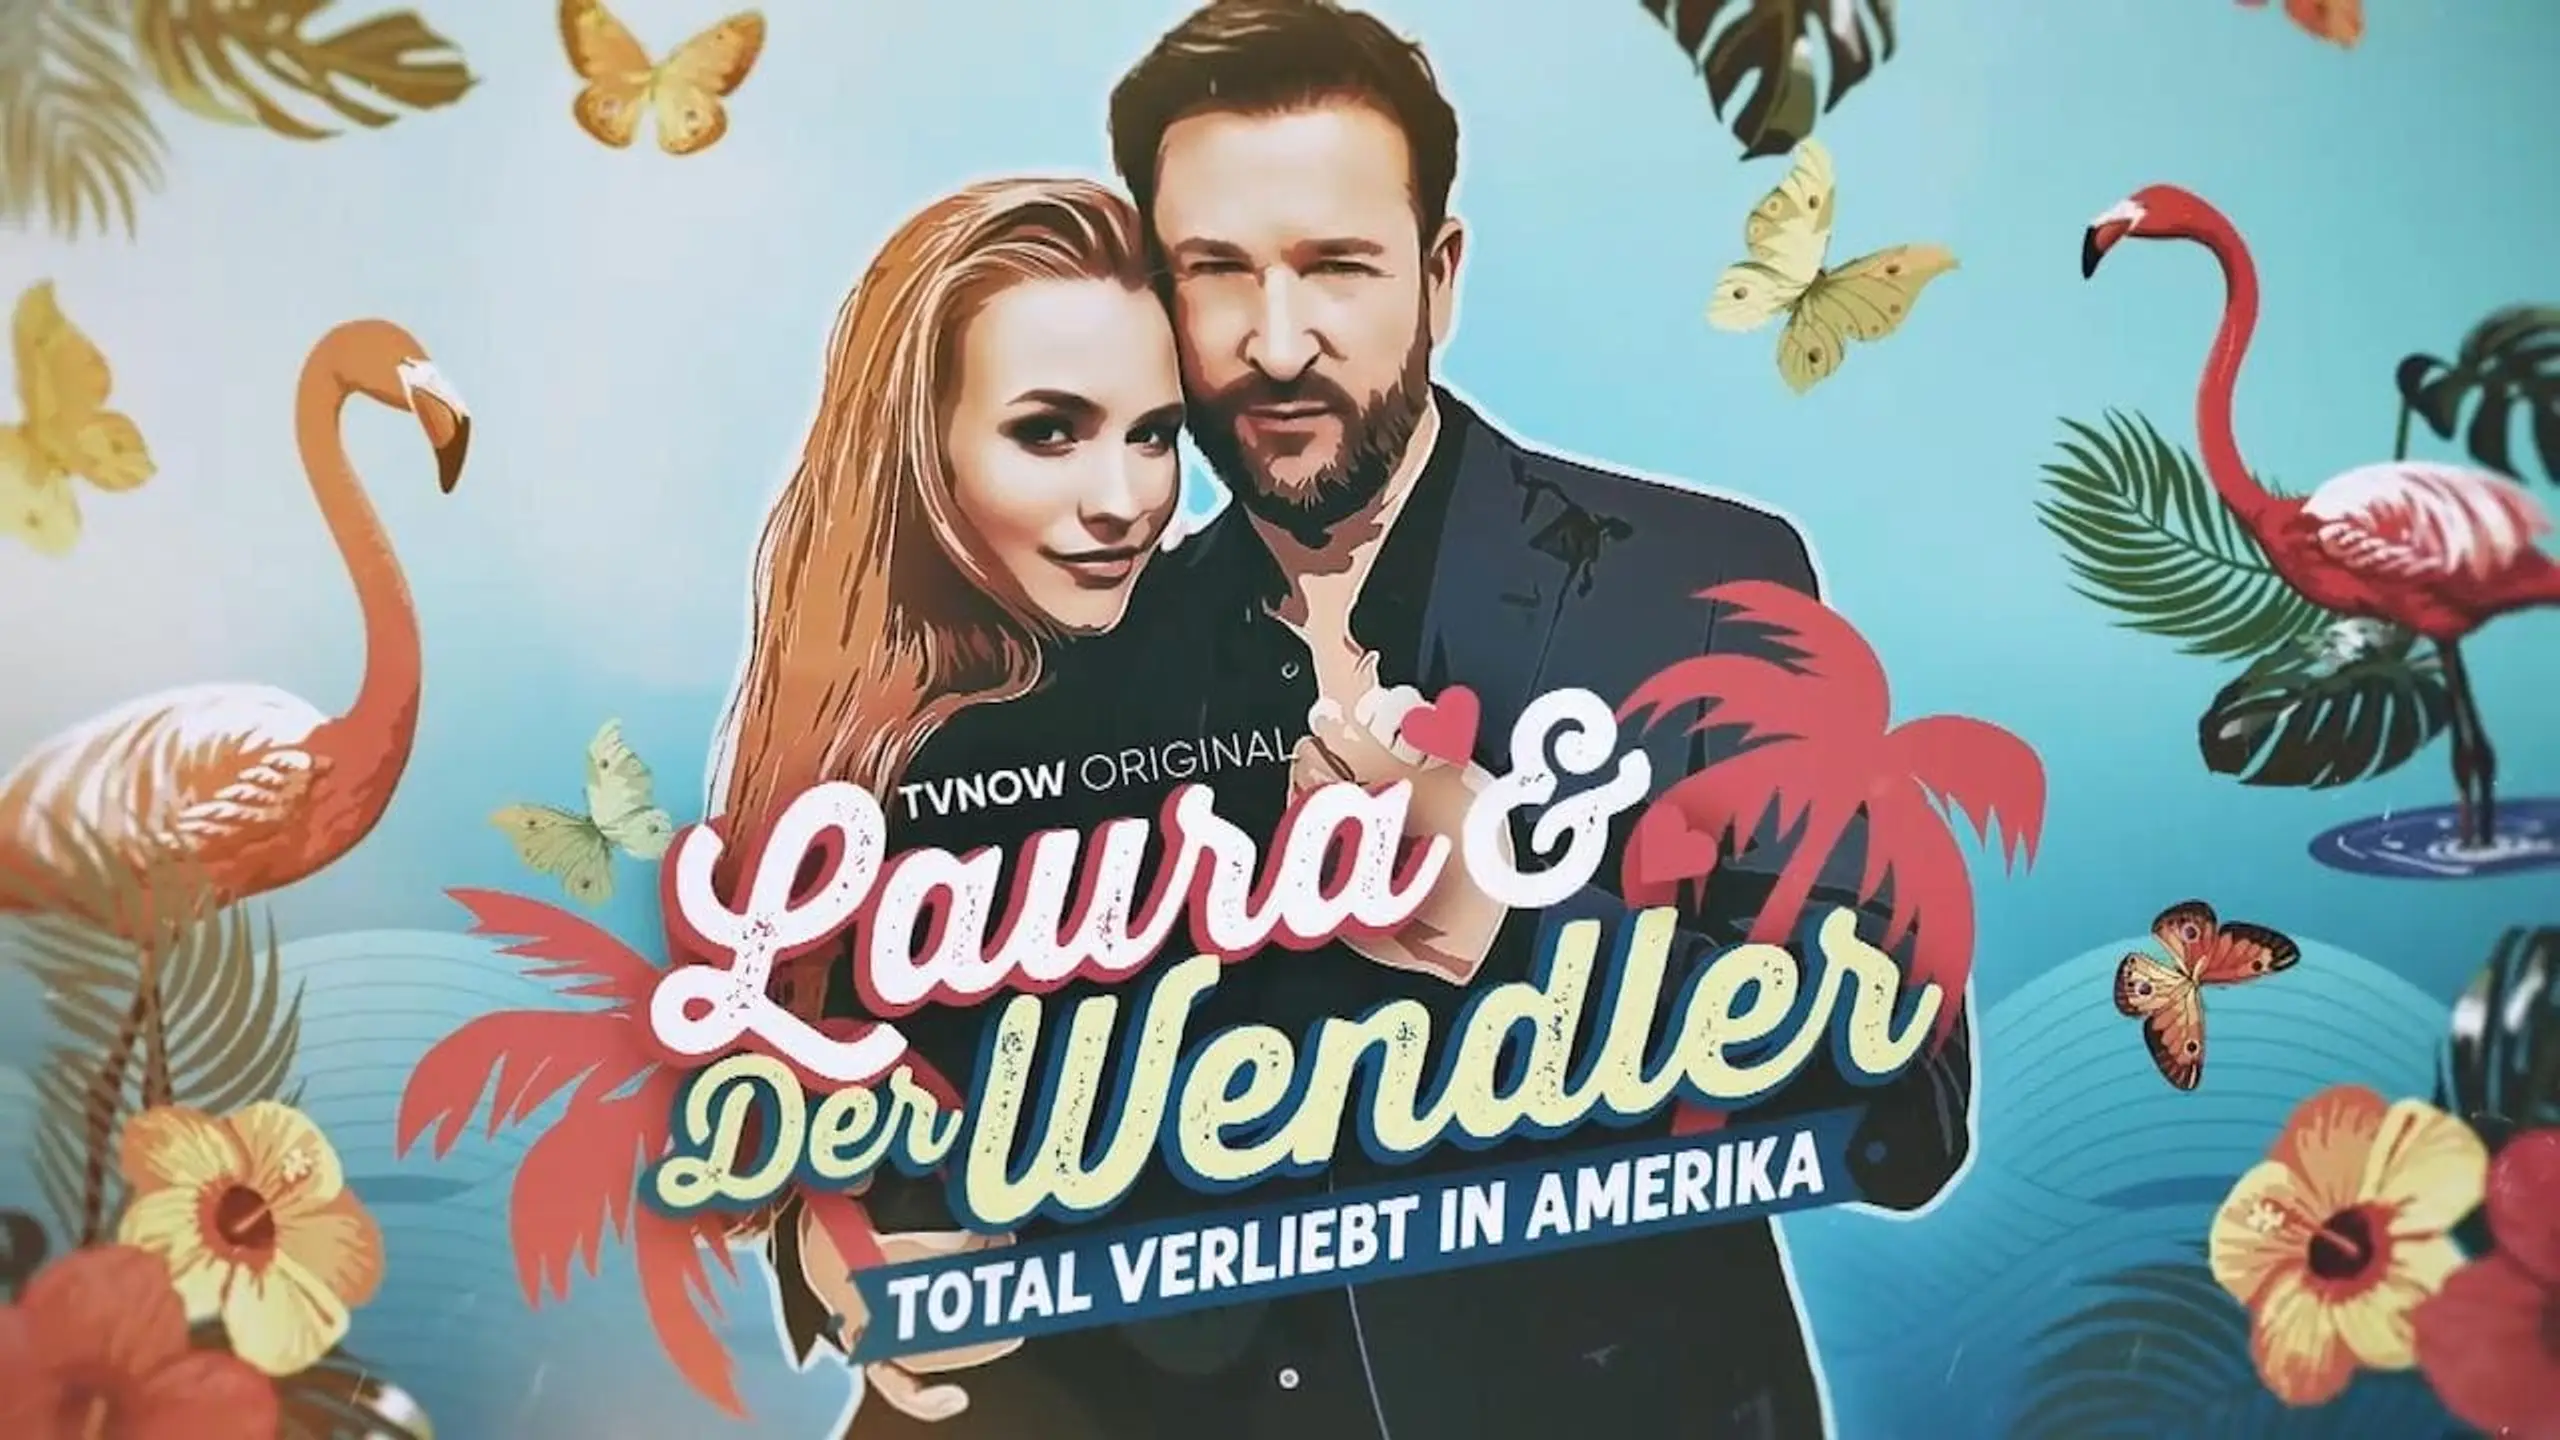 Laura und der Wendler - Total verliebt in Amerika